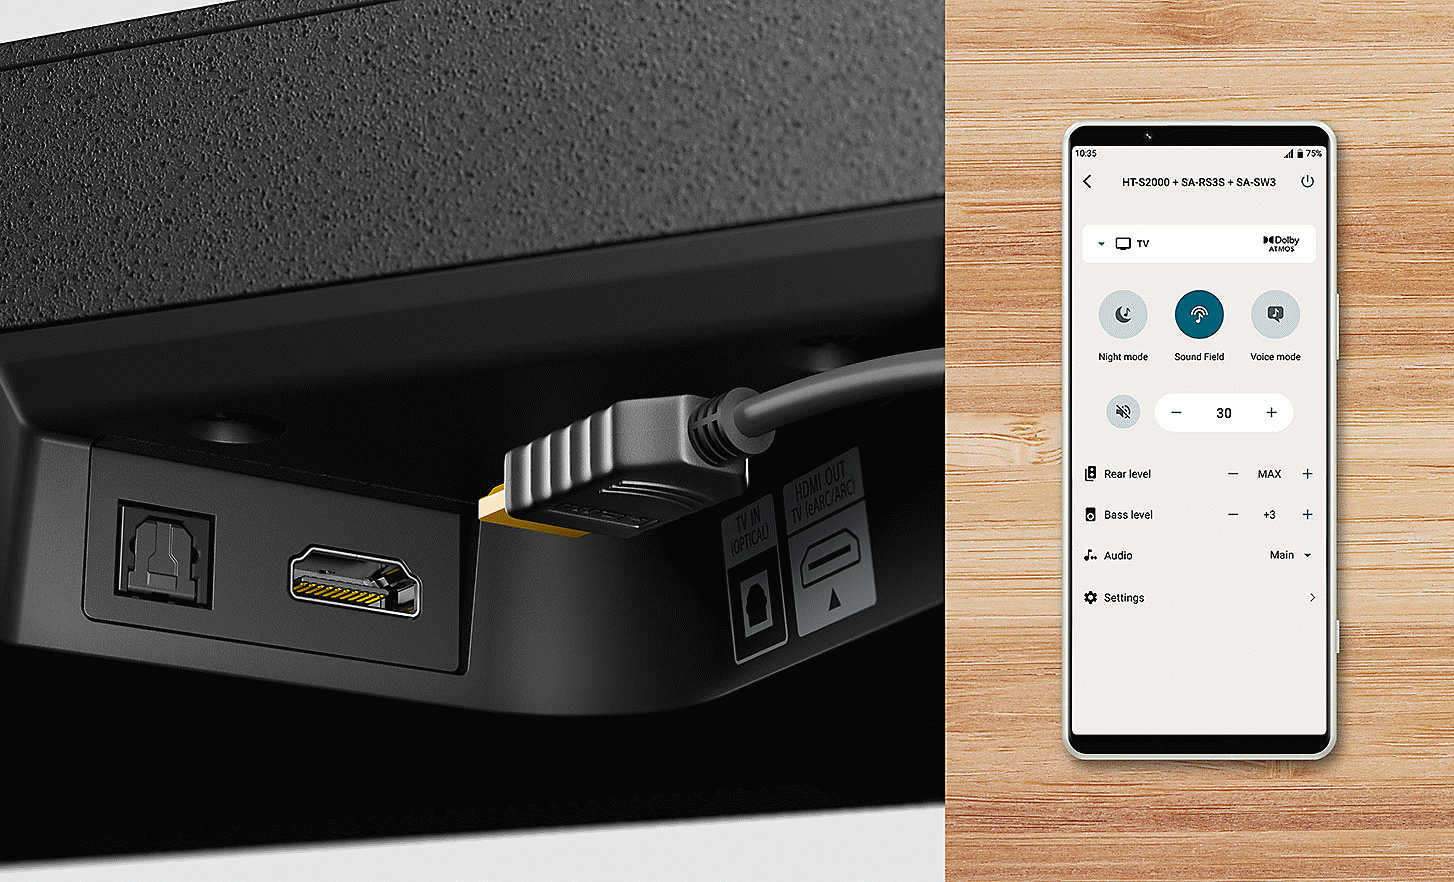 Prim-plan cu portul HDMI de pe HT-S2000 și un cablu HDMI, cu o imagine cu un telefon mobil afișând setările